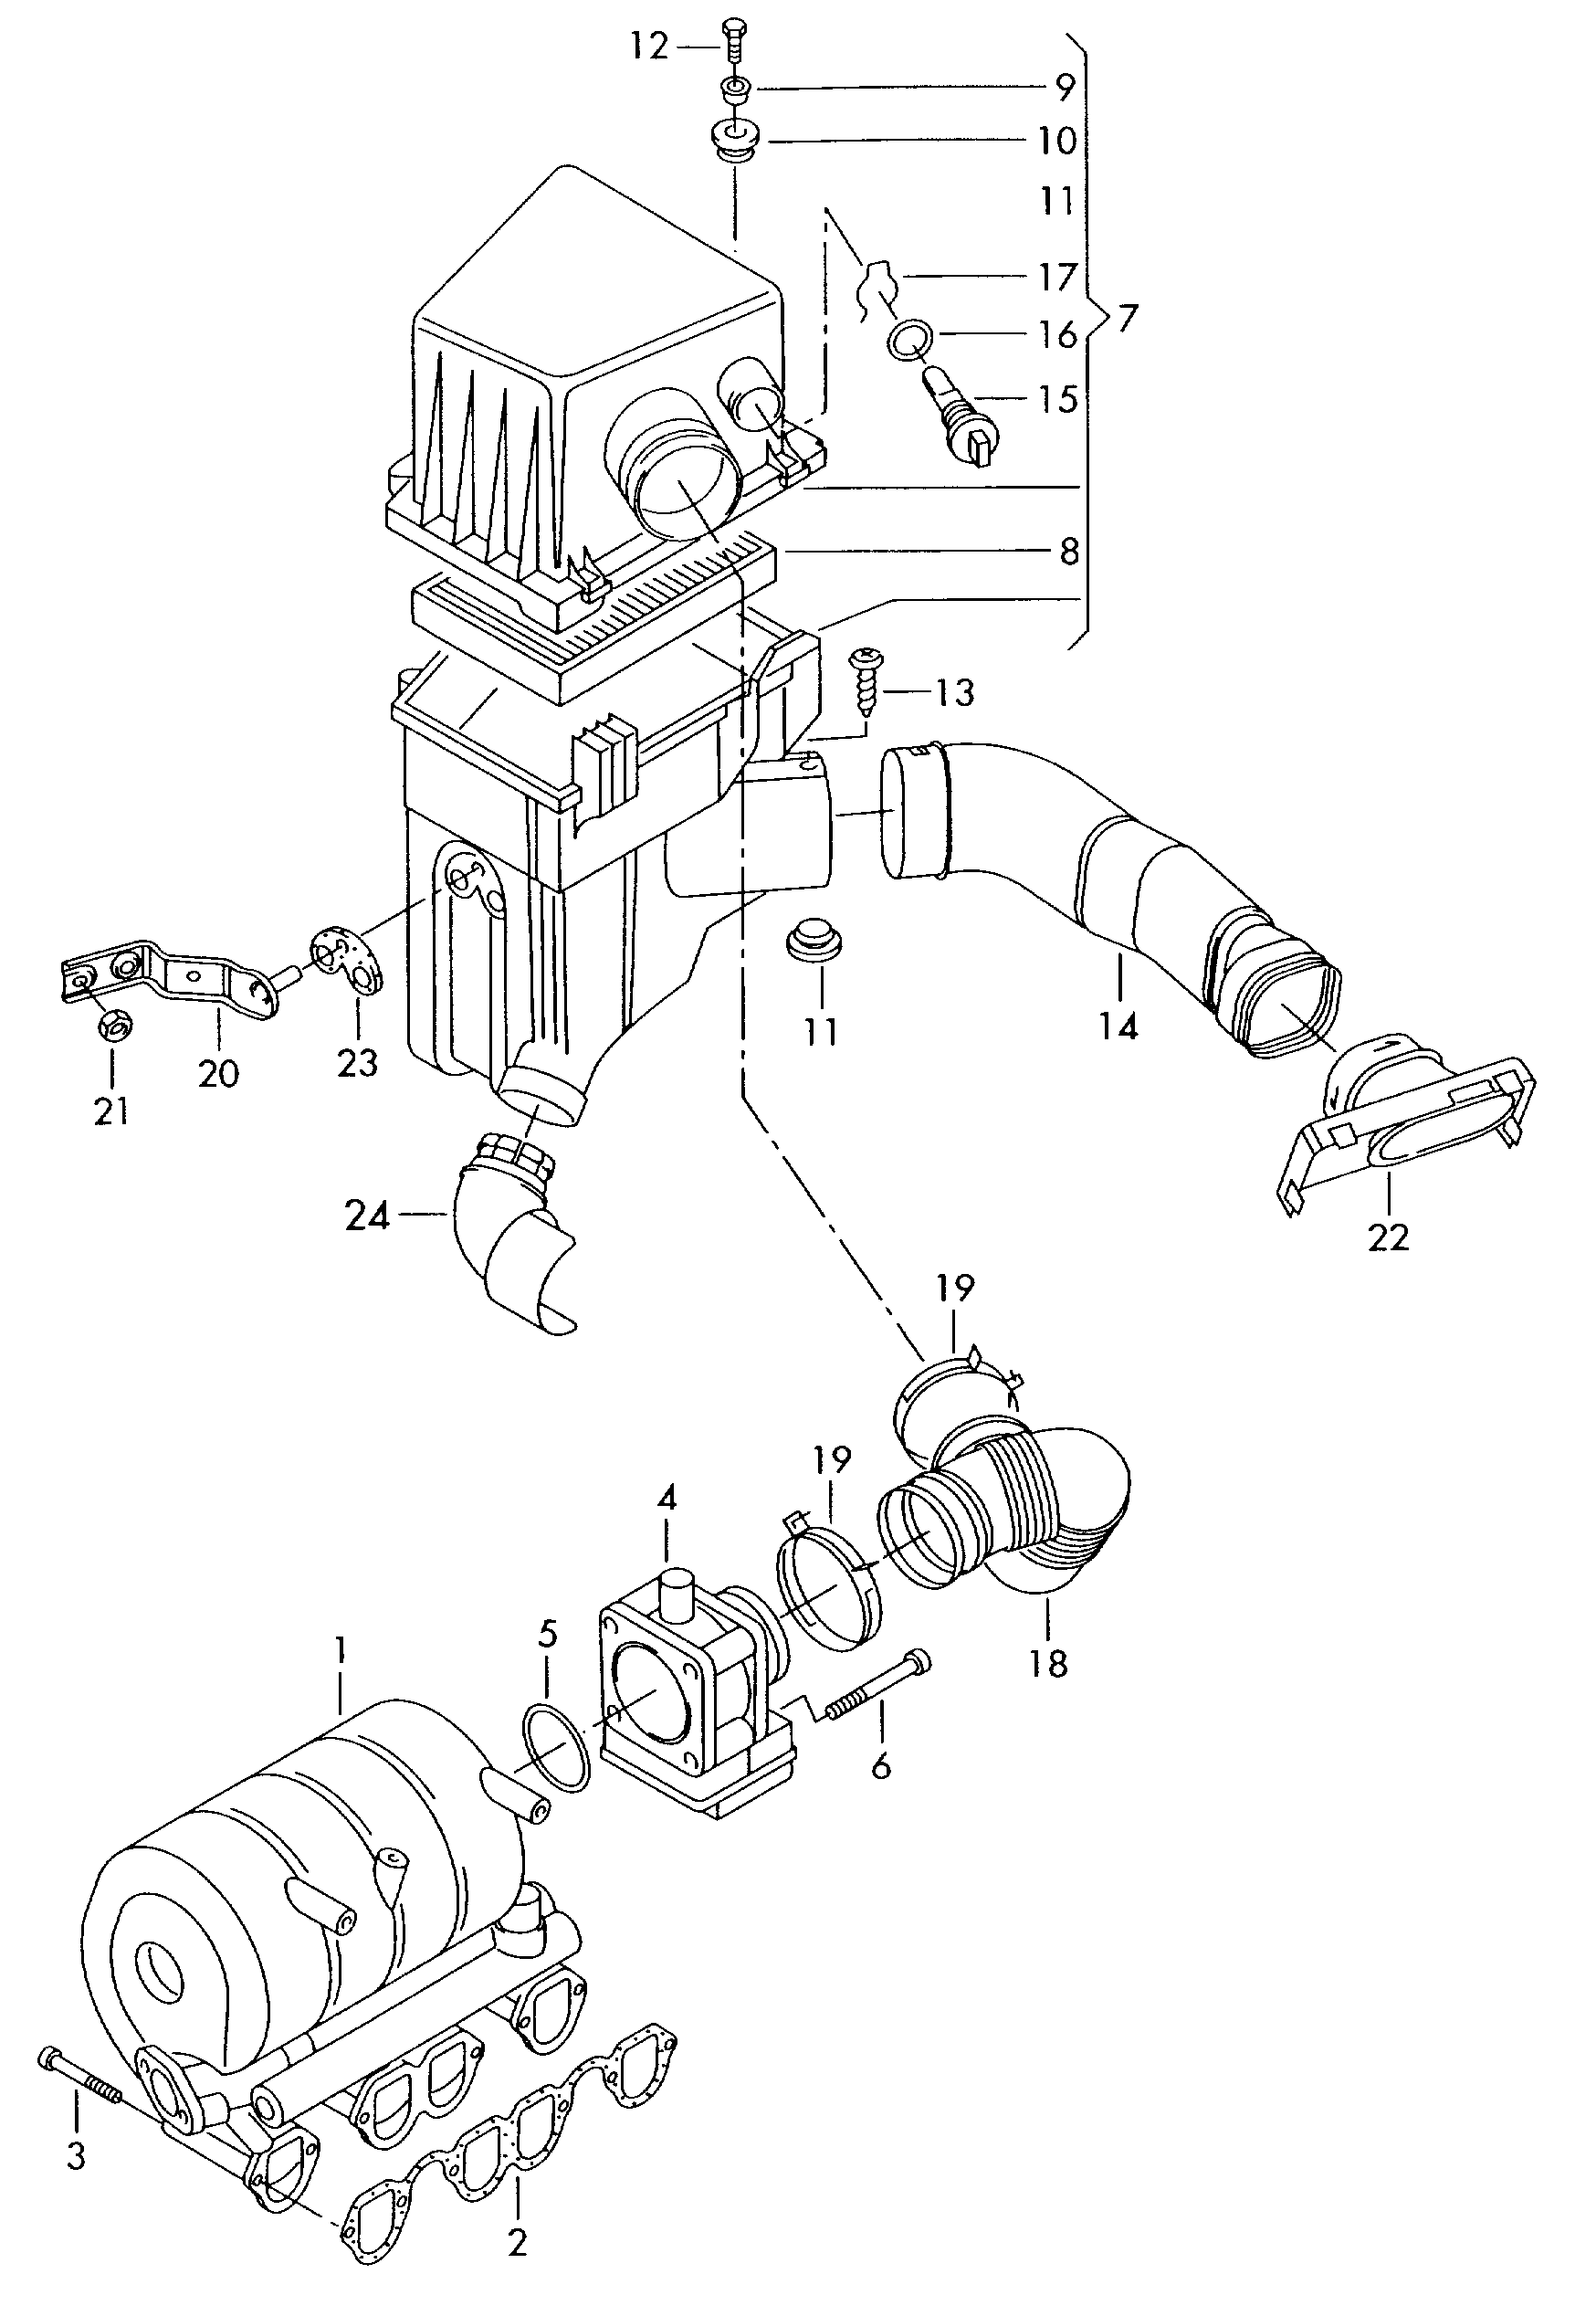 Boca de aspiracionFiltro de aire con piezas de<br>conexion 1,9l - Polo/Derby/Vento-IND - po